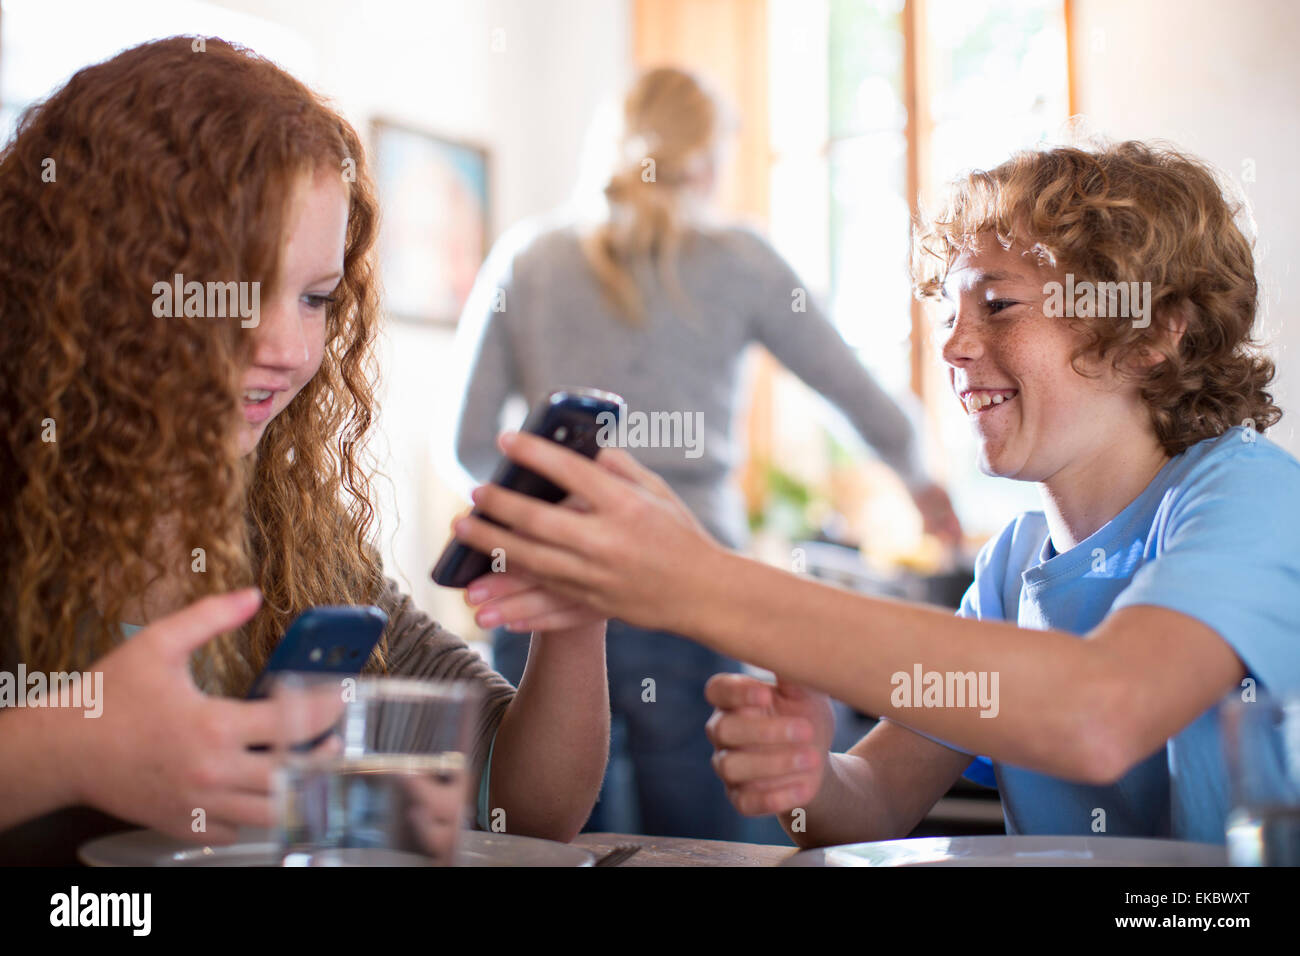 Geschwister mit Smartphone am Esstisch Stockfoto